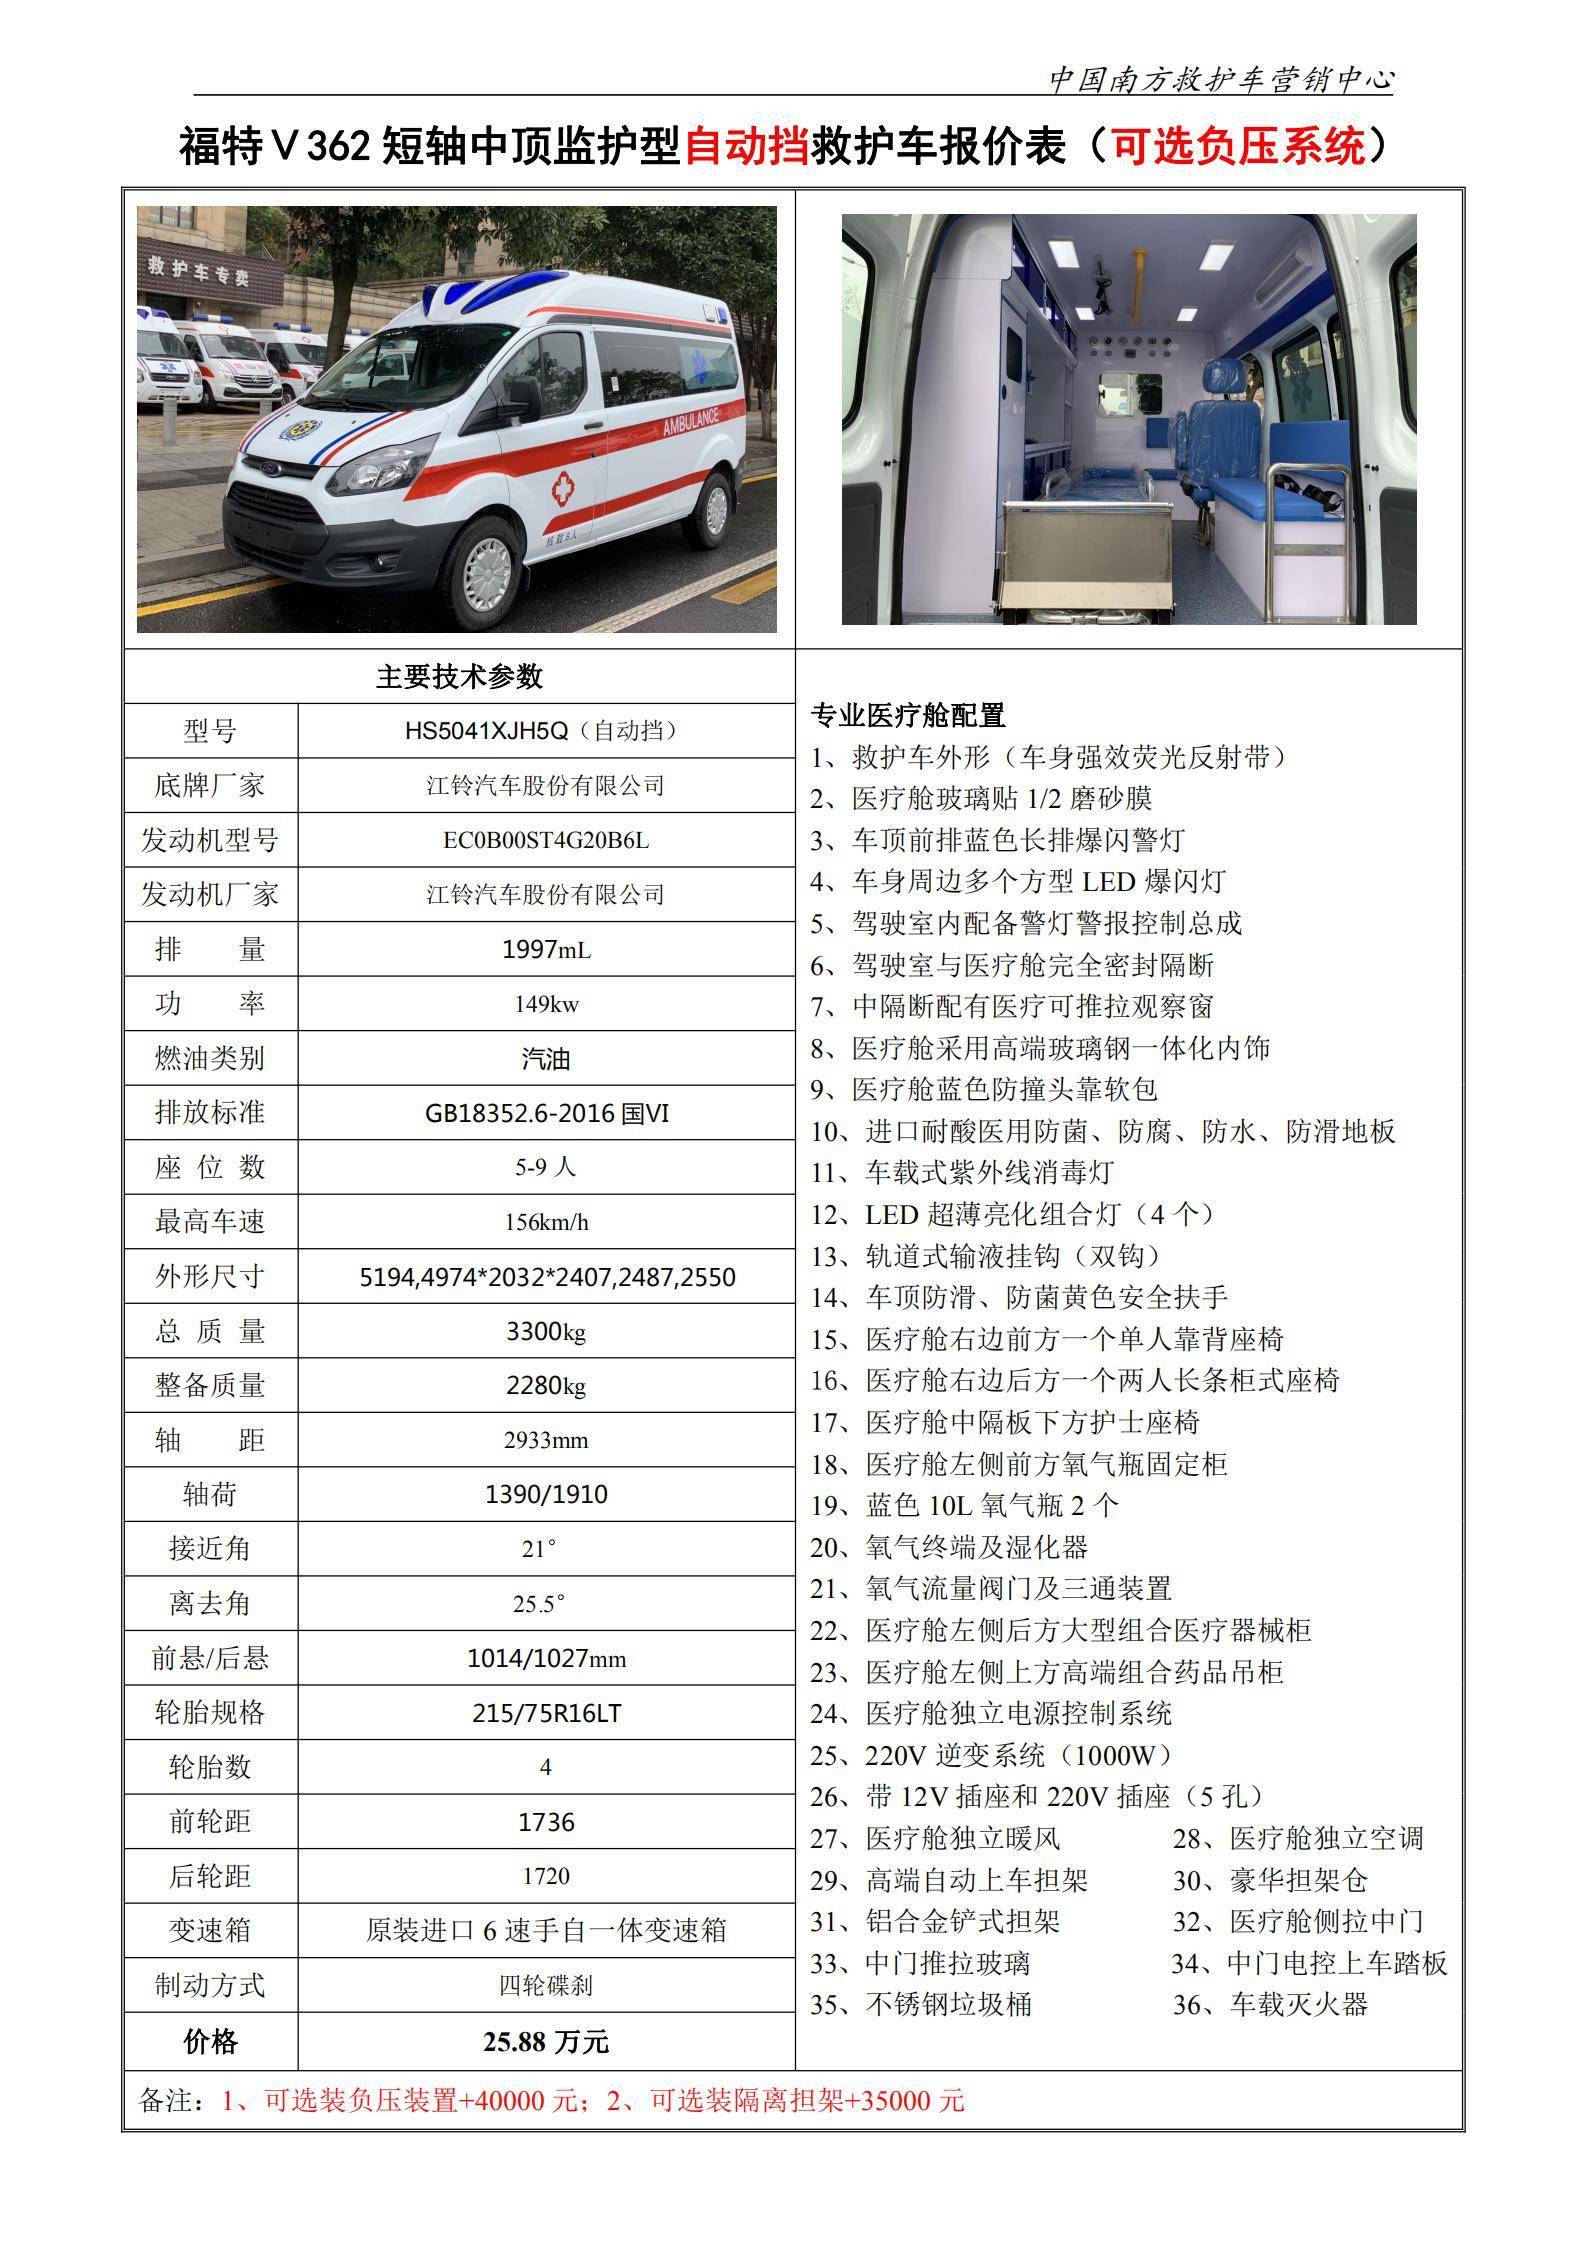 11、Ⅴ362短中汽油监护型救护车（自动